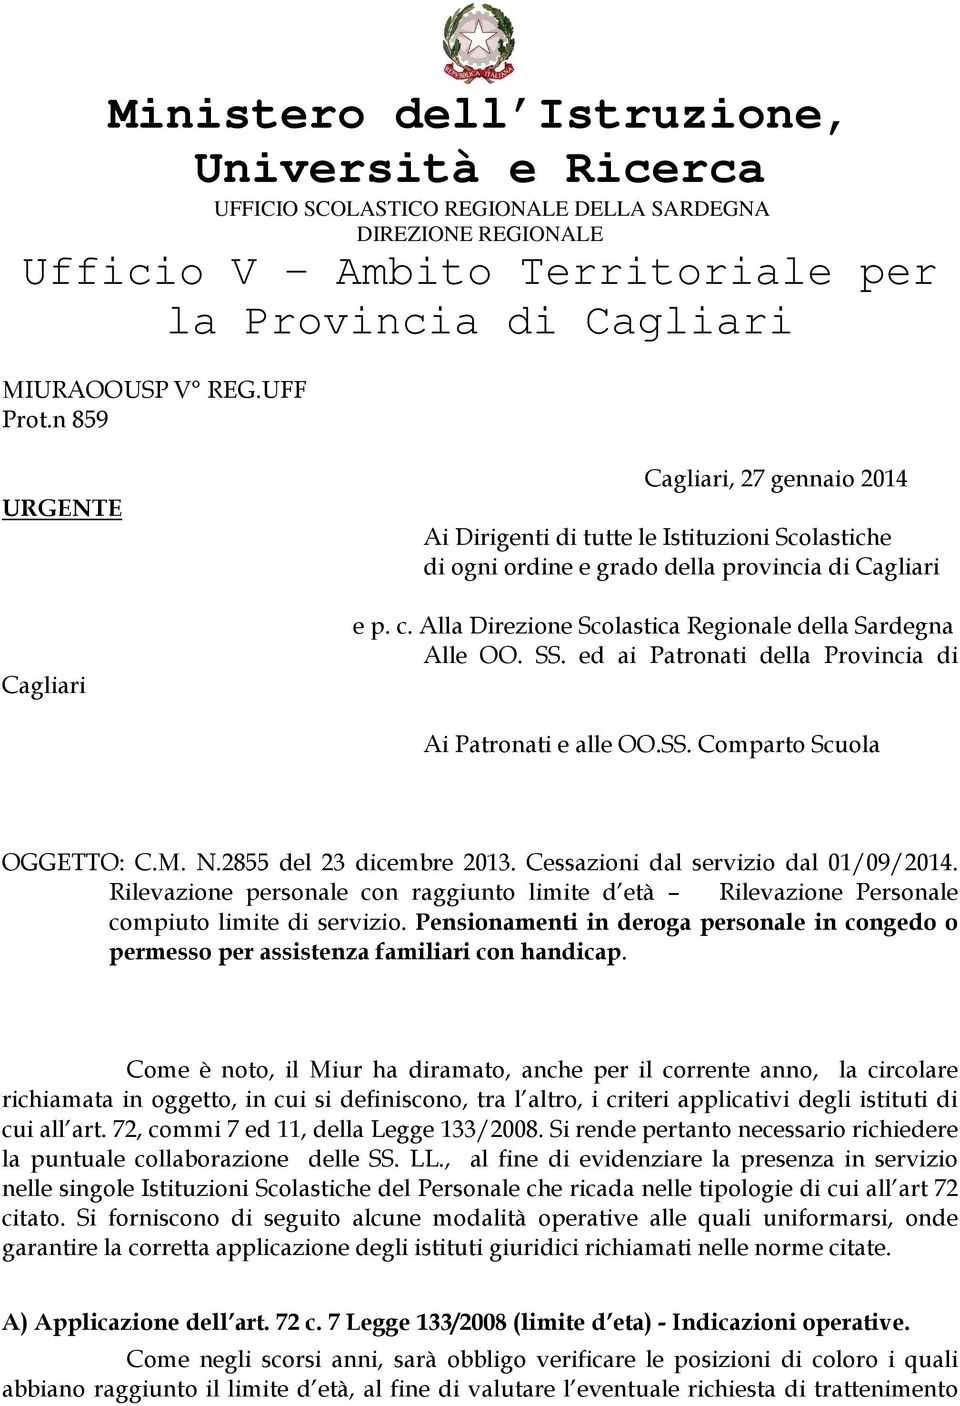 Alla Direzione Scolastica Regionale della Sardegna Alle OO. SS. ed ai Patronati della Provincia di Ai Patronati e alle OO.SS. Comparto Scuola OGGETTO: C.M. N.2855 del 23 dicembre 2013.